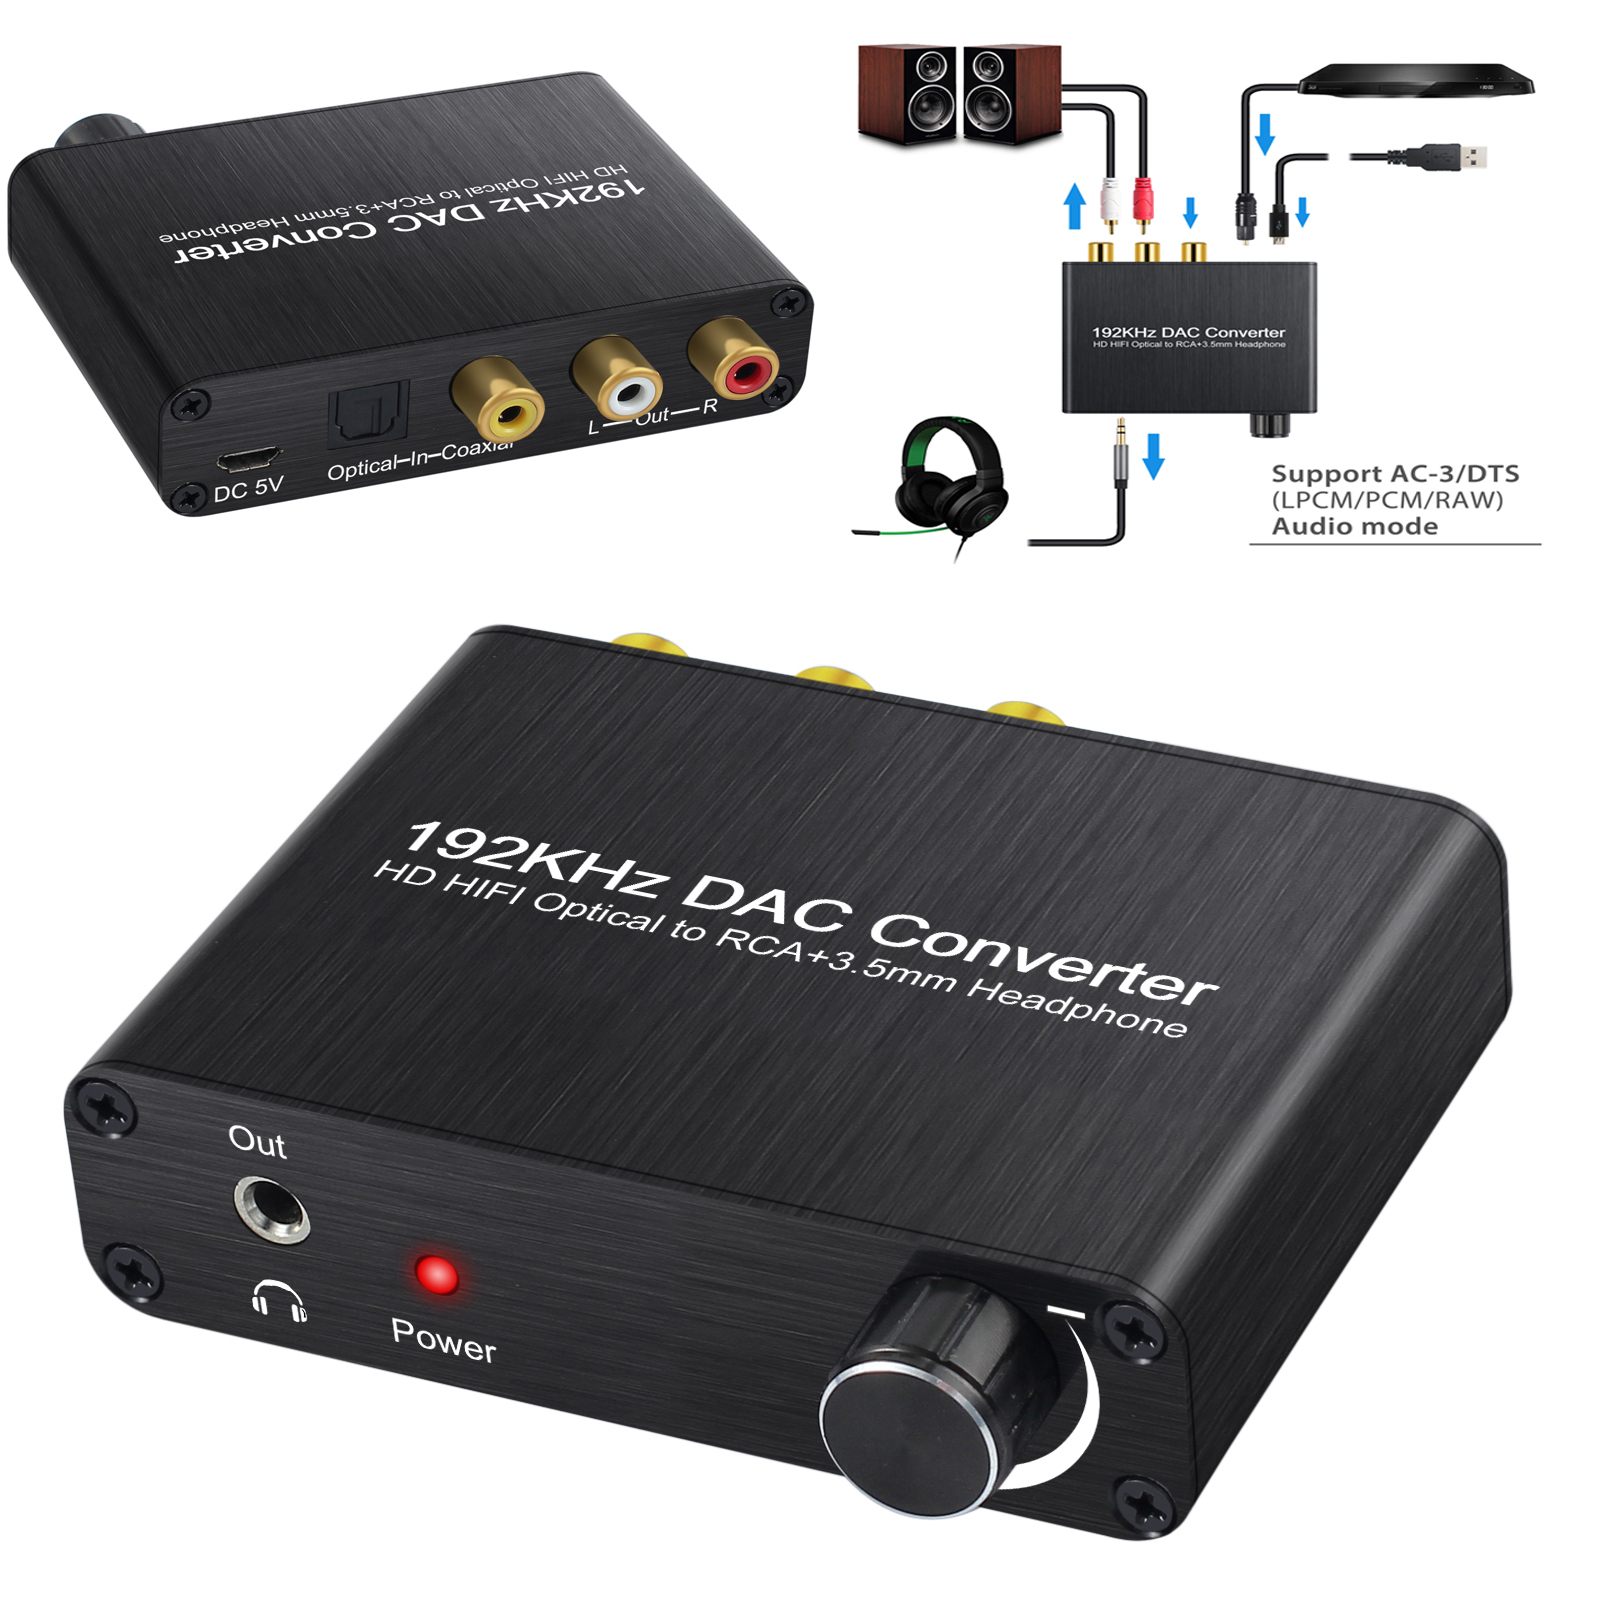 ตัวแปลงแยกเสียงและภาพ 5.1ch Digital Audio 192KHZ AC-3/DTS Optical Toslink to Analog Converter Decoder